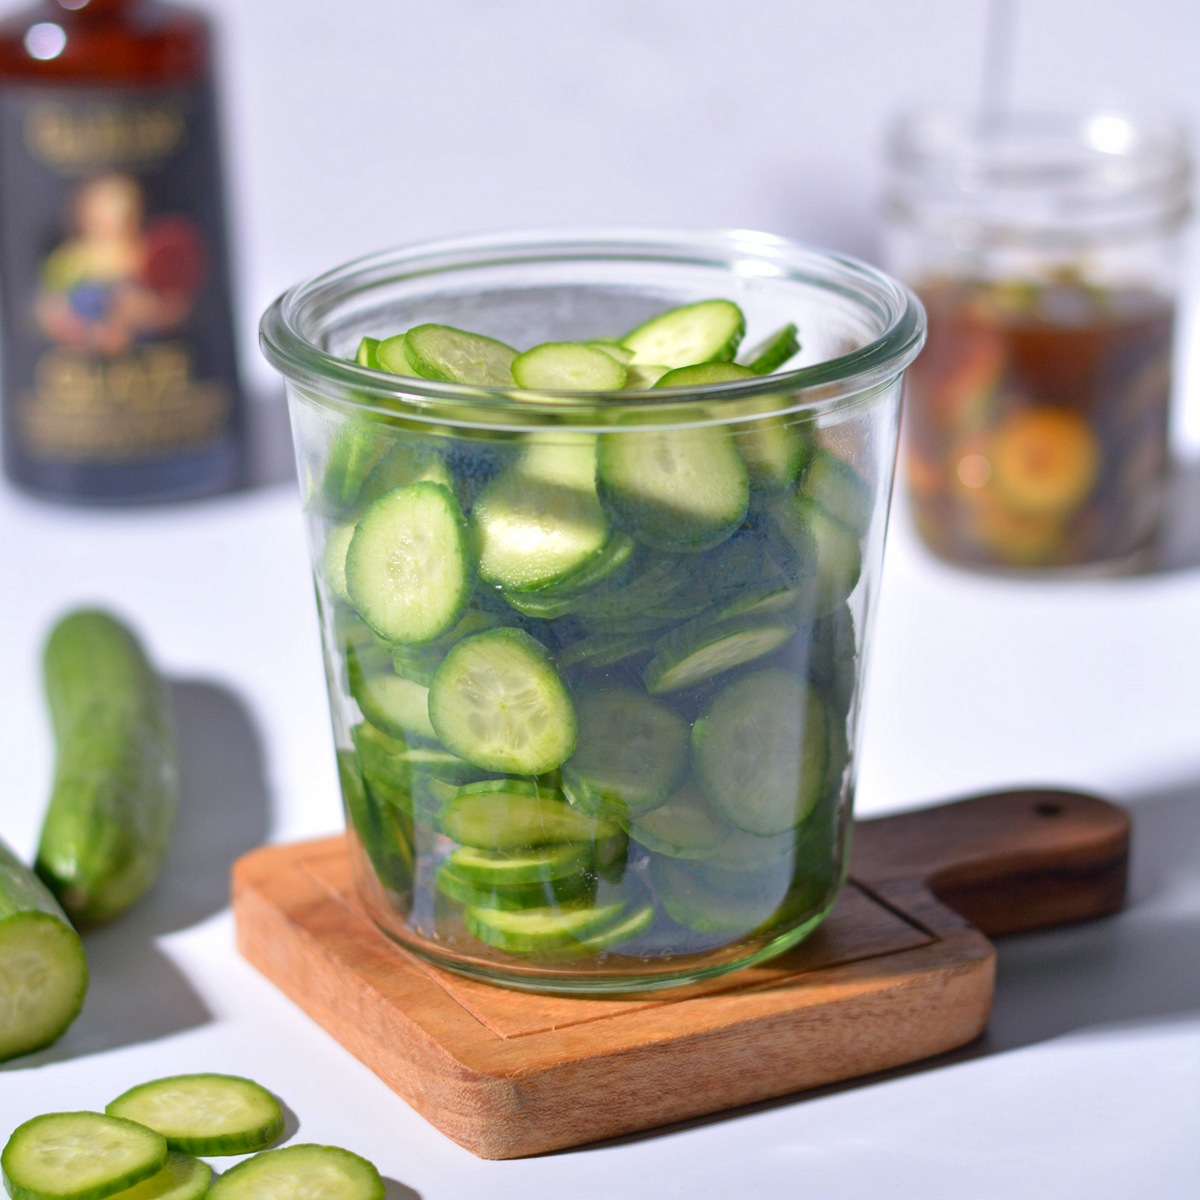 Sliced cucumbers in a jar.